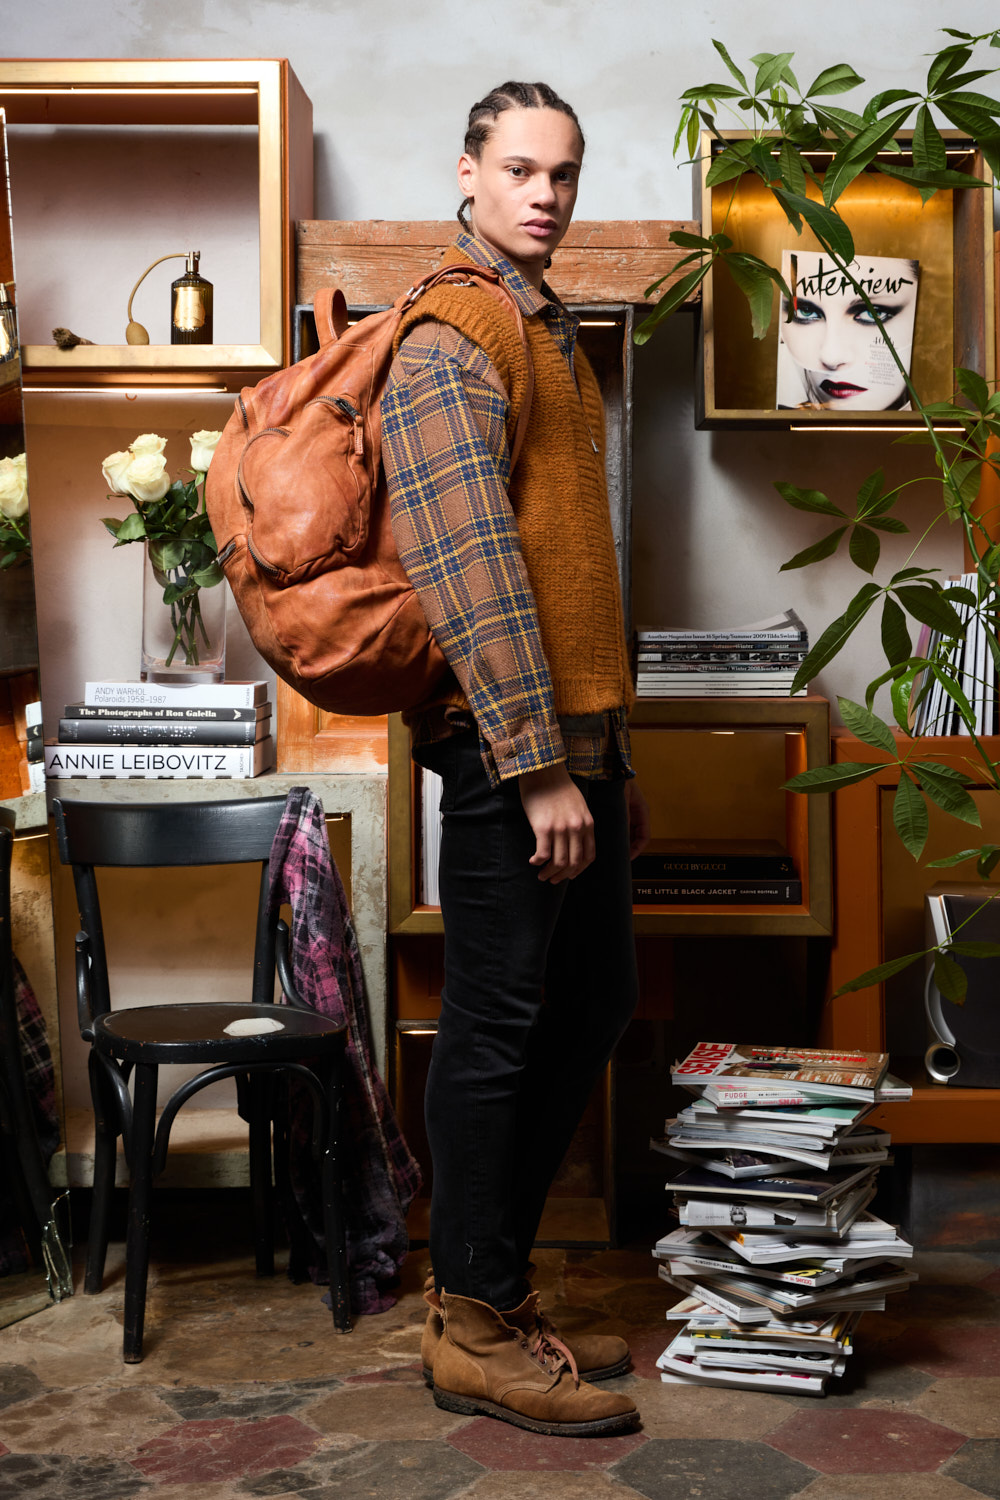 Giorgio Brato | Backpack